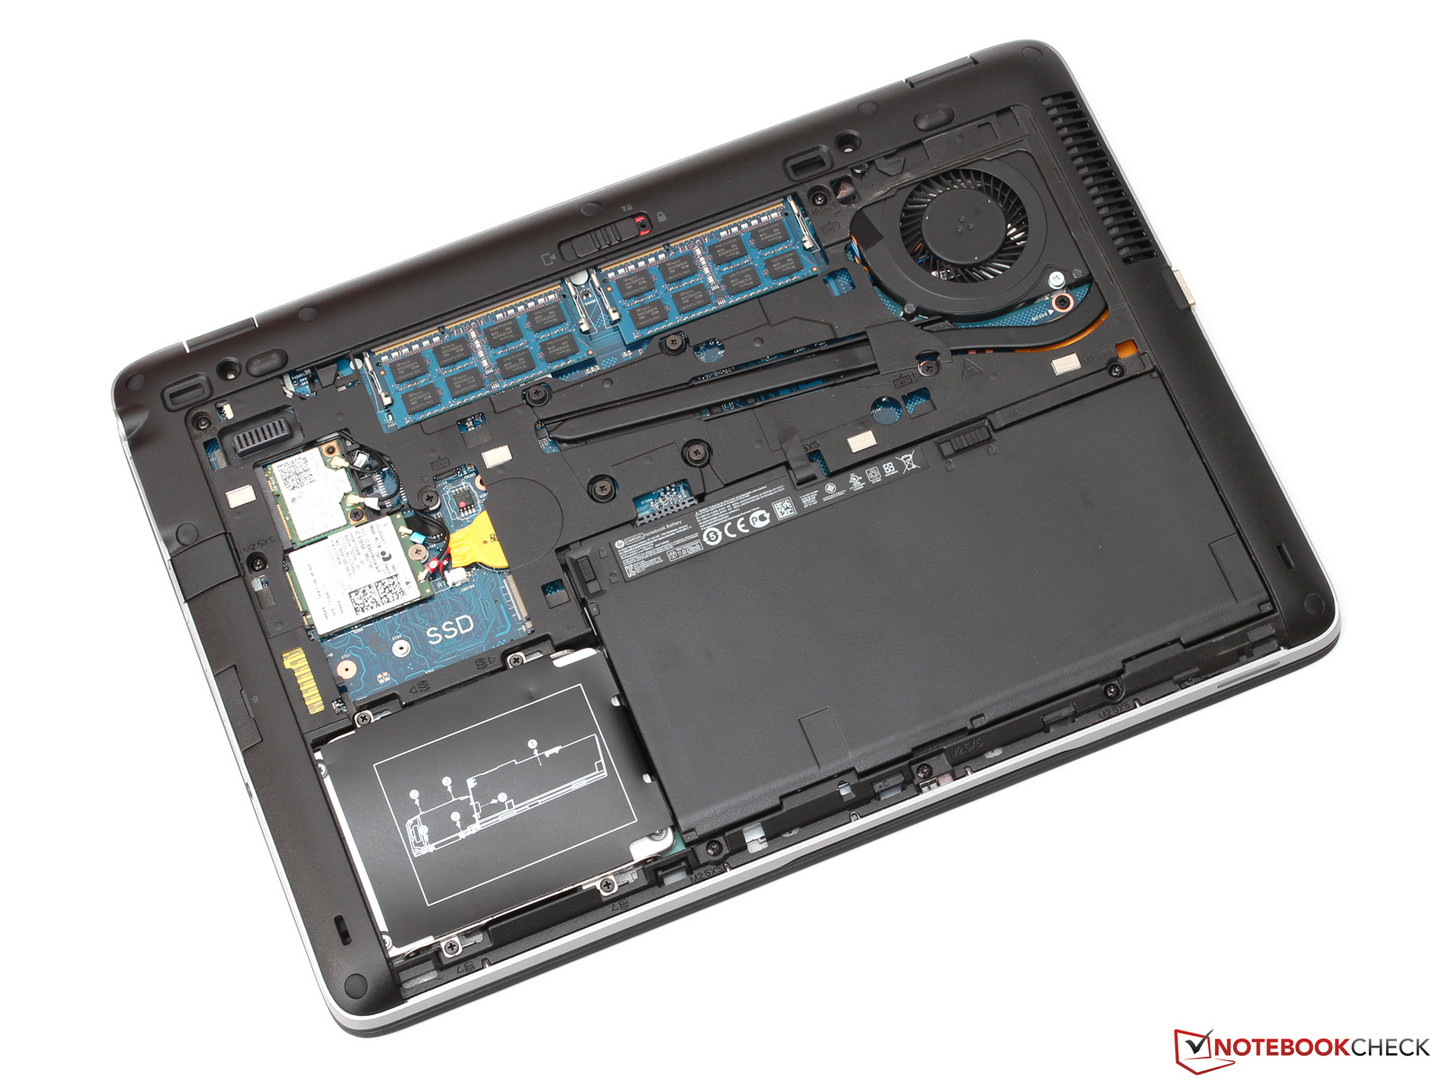 HP EliteBook 840 G2 Notebook Review - NotebookCheck.net Reviews